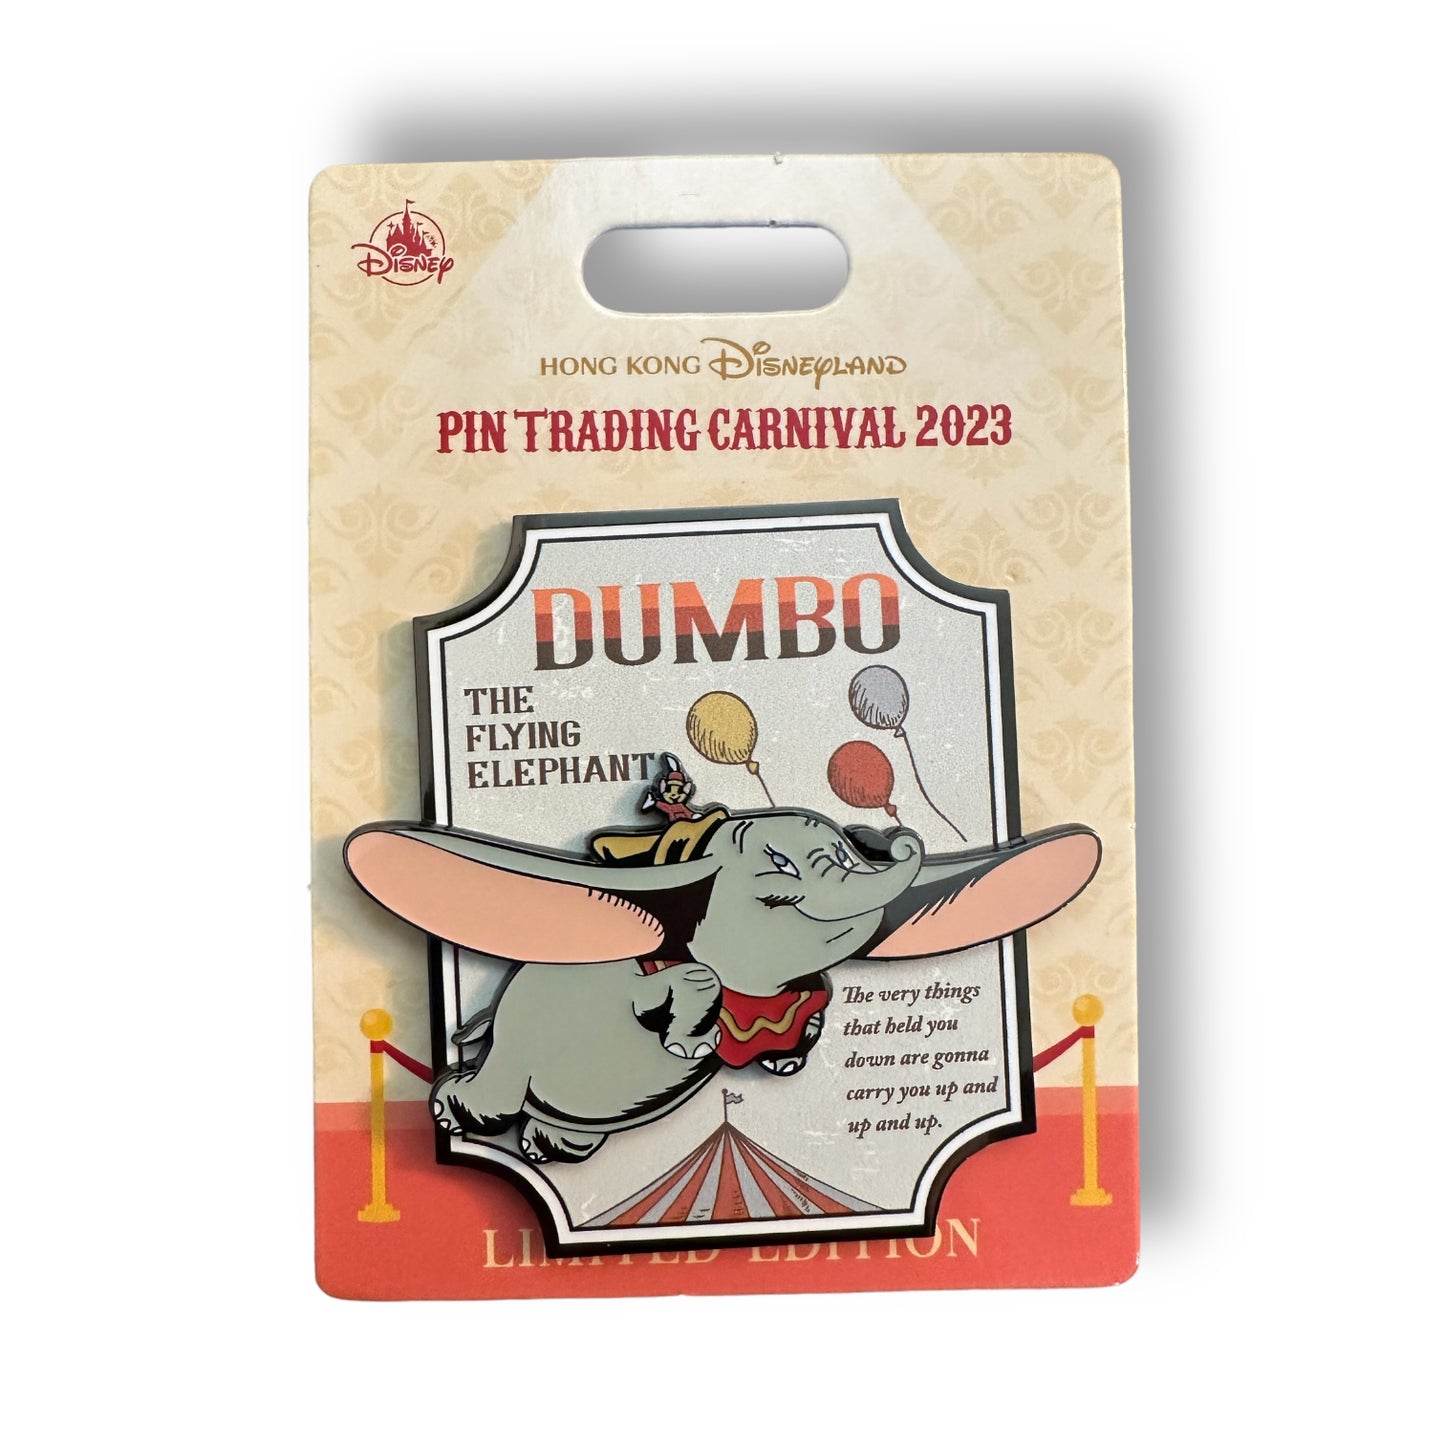 HKDL Pin Trading Carnival 2023 Mini Jumbo Dumbo Pin